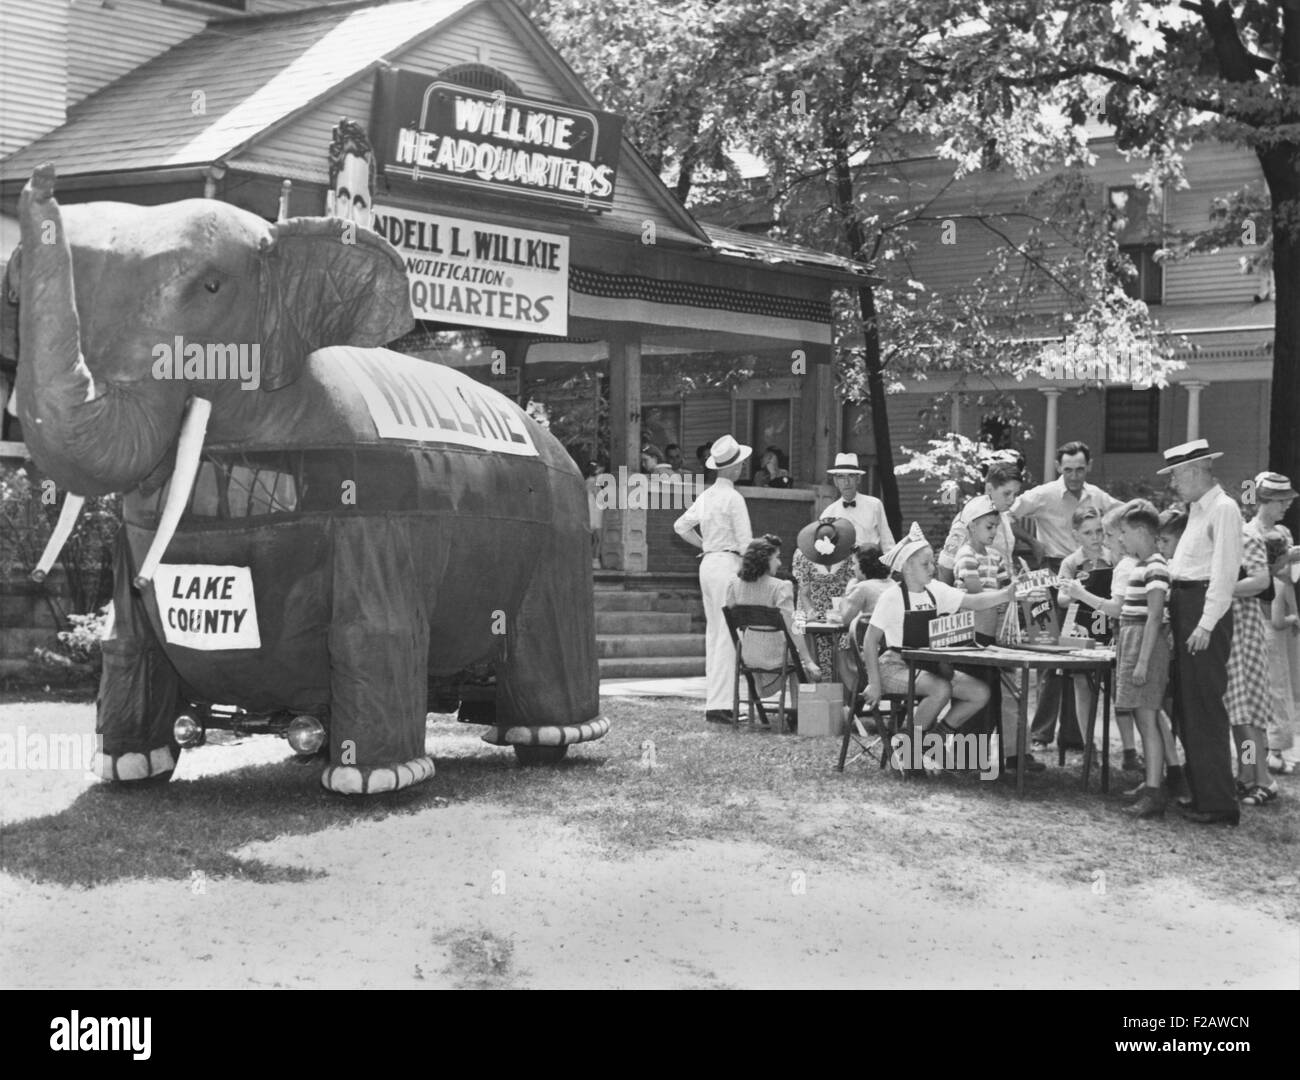 Una gran tela de ataques de elefantes a los compradores un souvenir stand en Elwood, Indiana, el 15 de agosto de 1940. Se estaban preparando para la aparición de Willkie a formular su aceptación formal del presidente republicano nominación. (CSU 2015 11 1403) Foto de stock